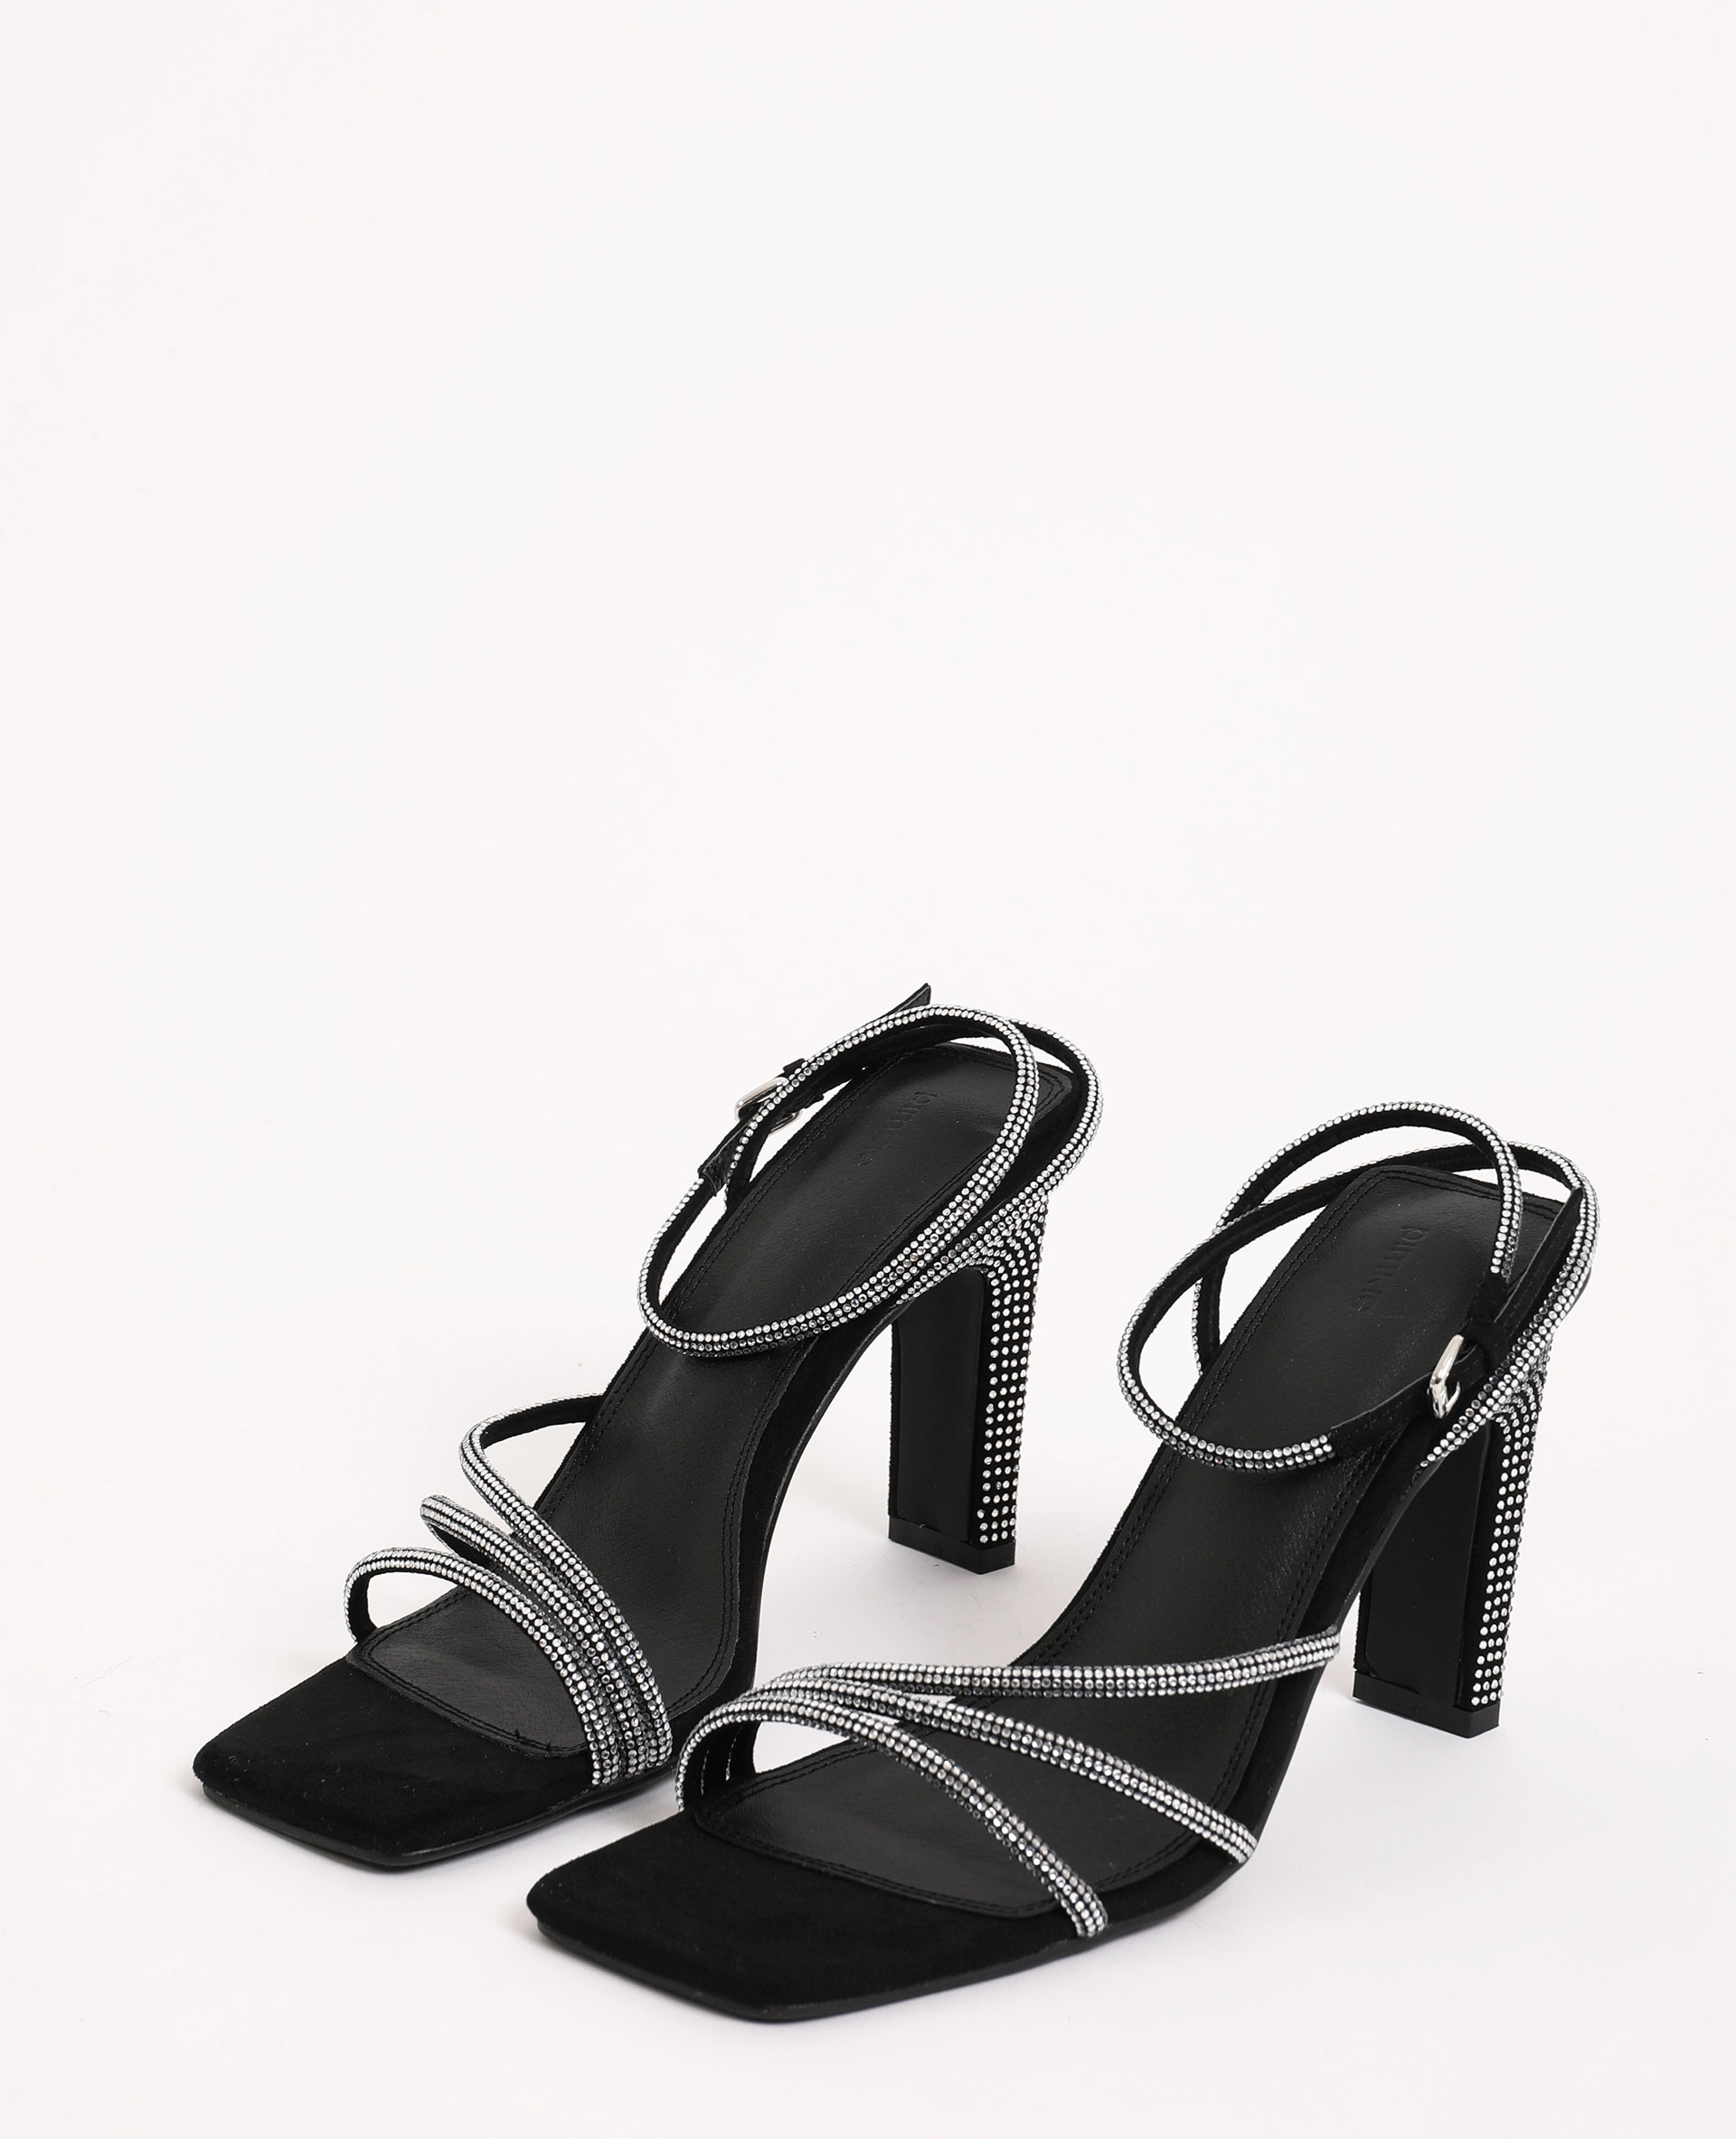 Sandales à strass noir - Pimkie